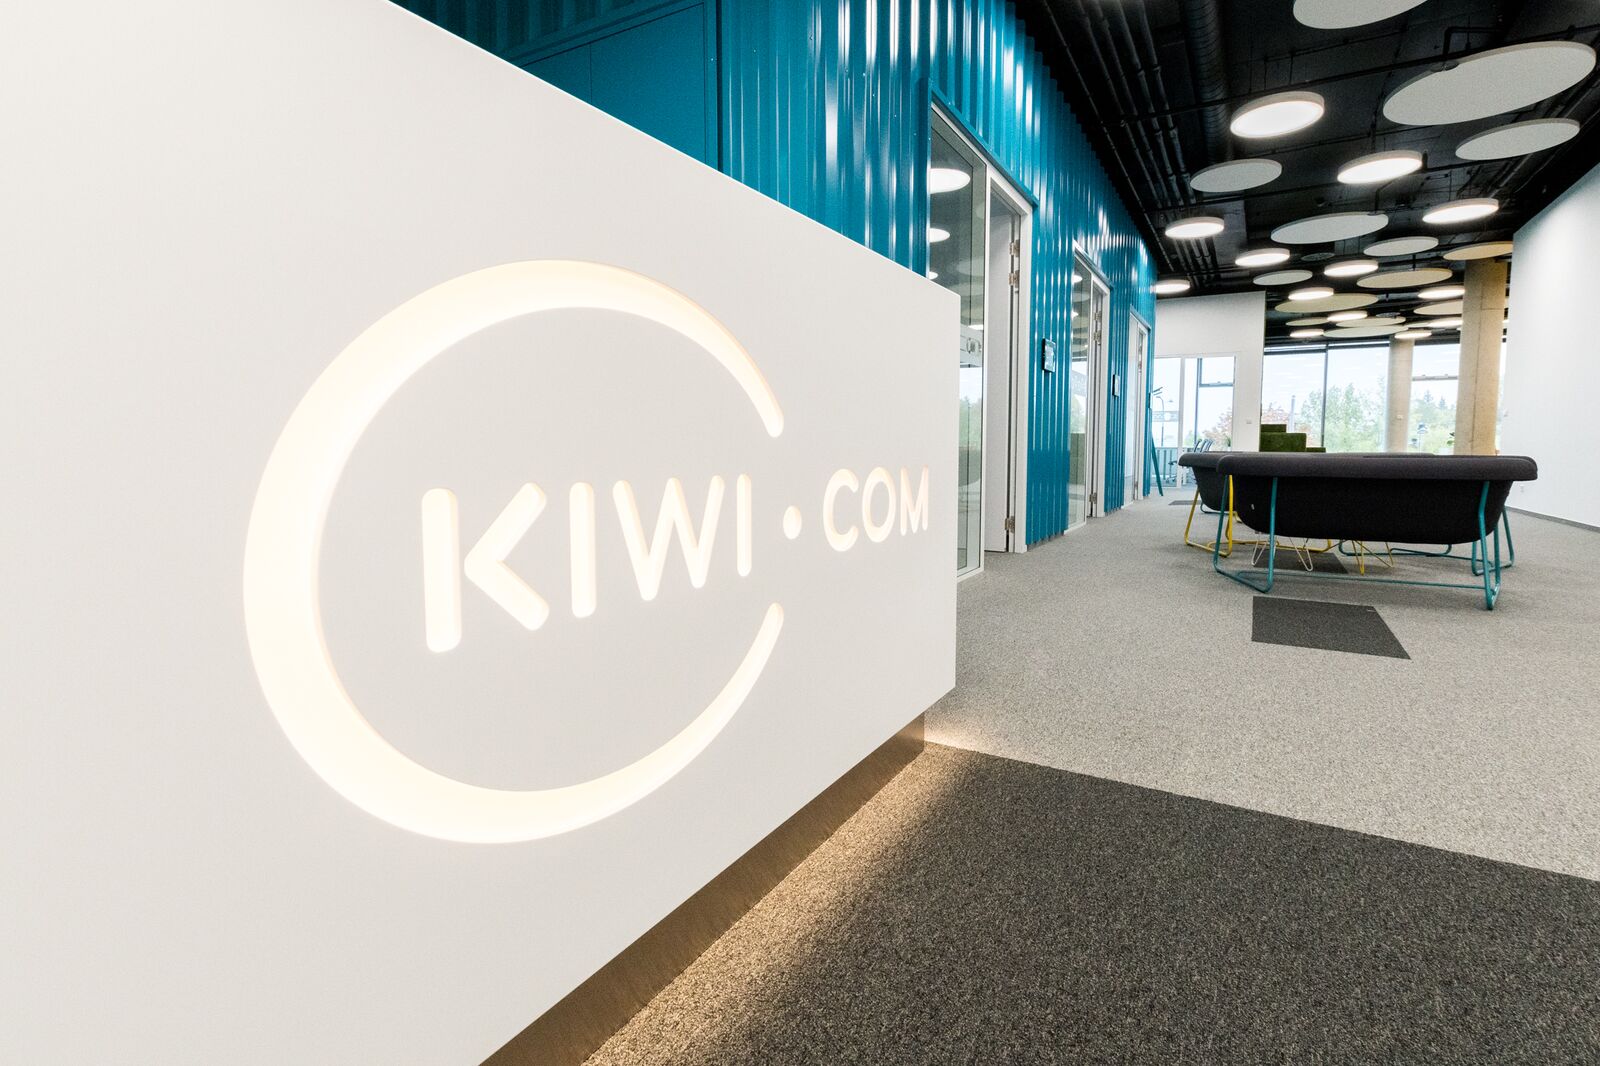 New Kiwi.com CFO Iain Wetherall